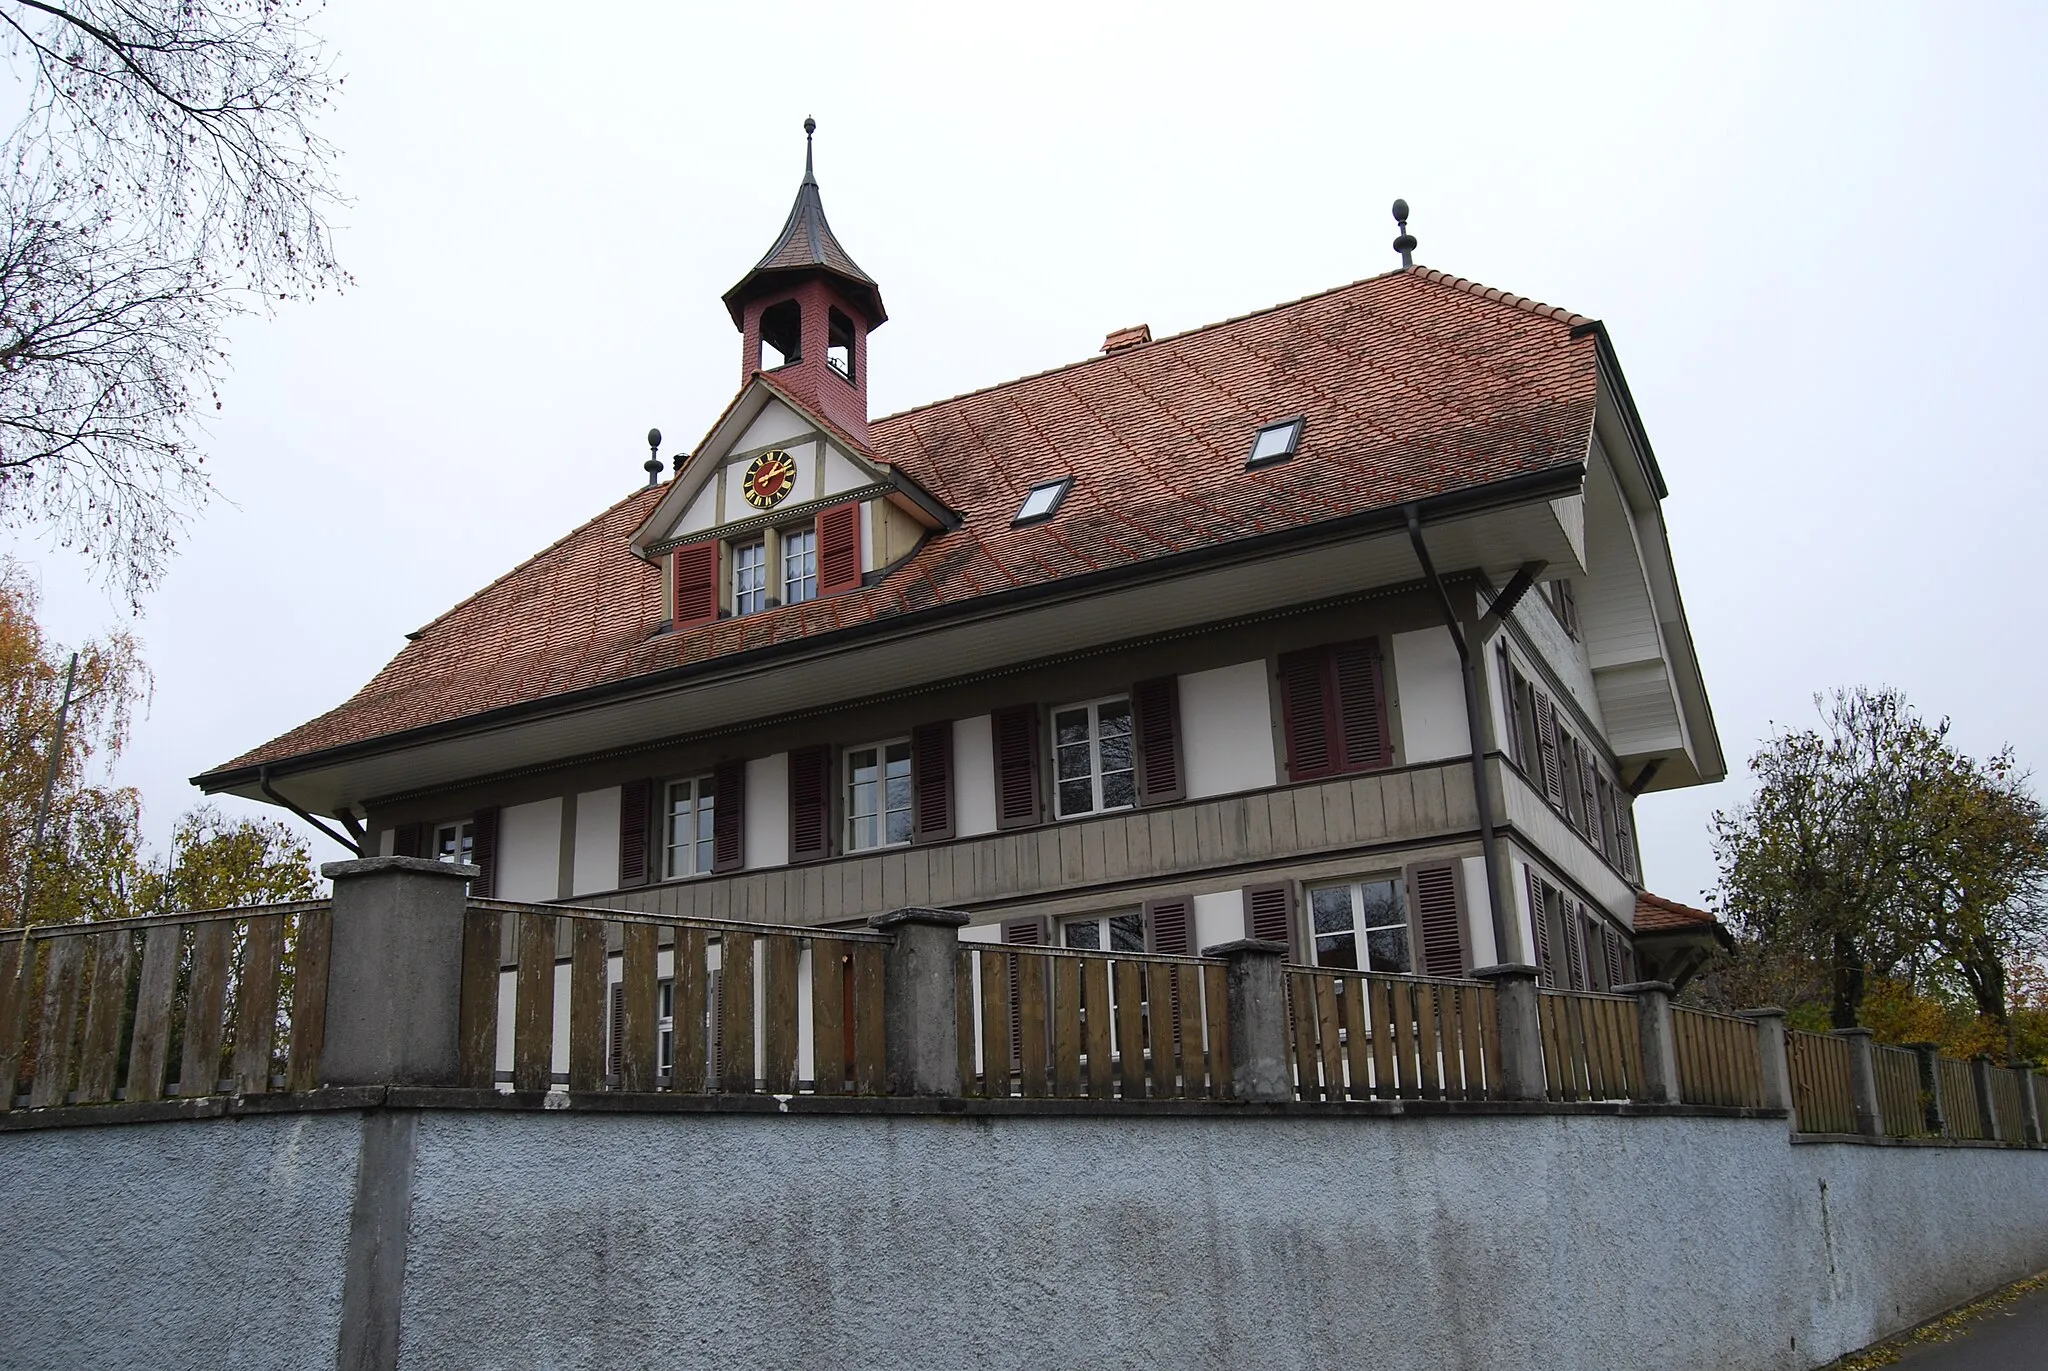 Photo showing: School building of Bangerten, canton of Bern, Switzerland